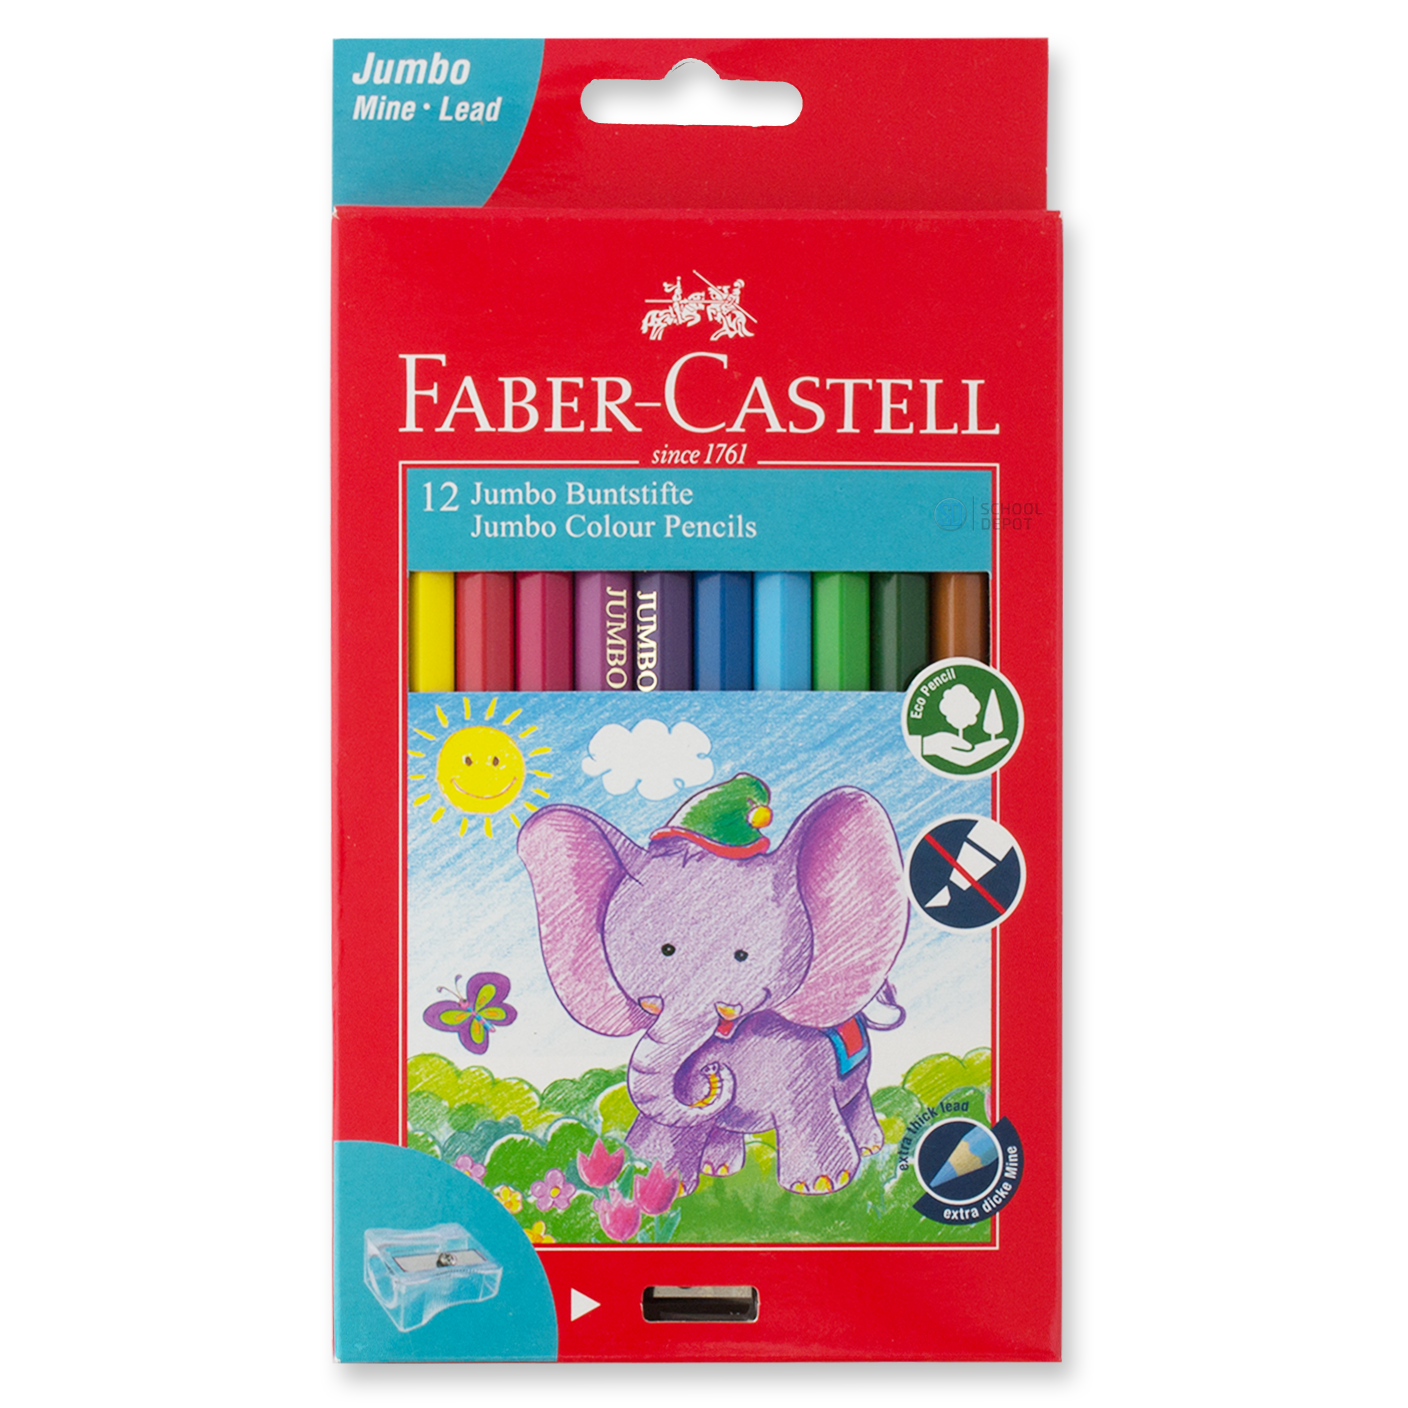 Faber-Castell Jumbo Coloured Pencils Full Length 12 Pack with Sharpener